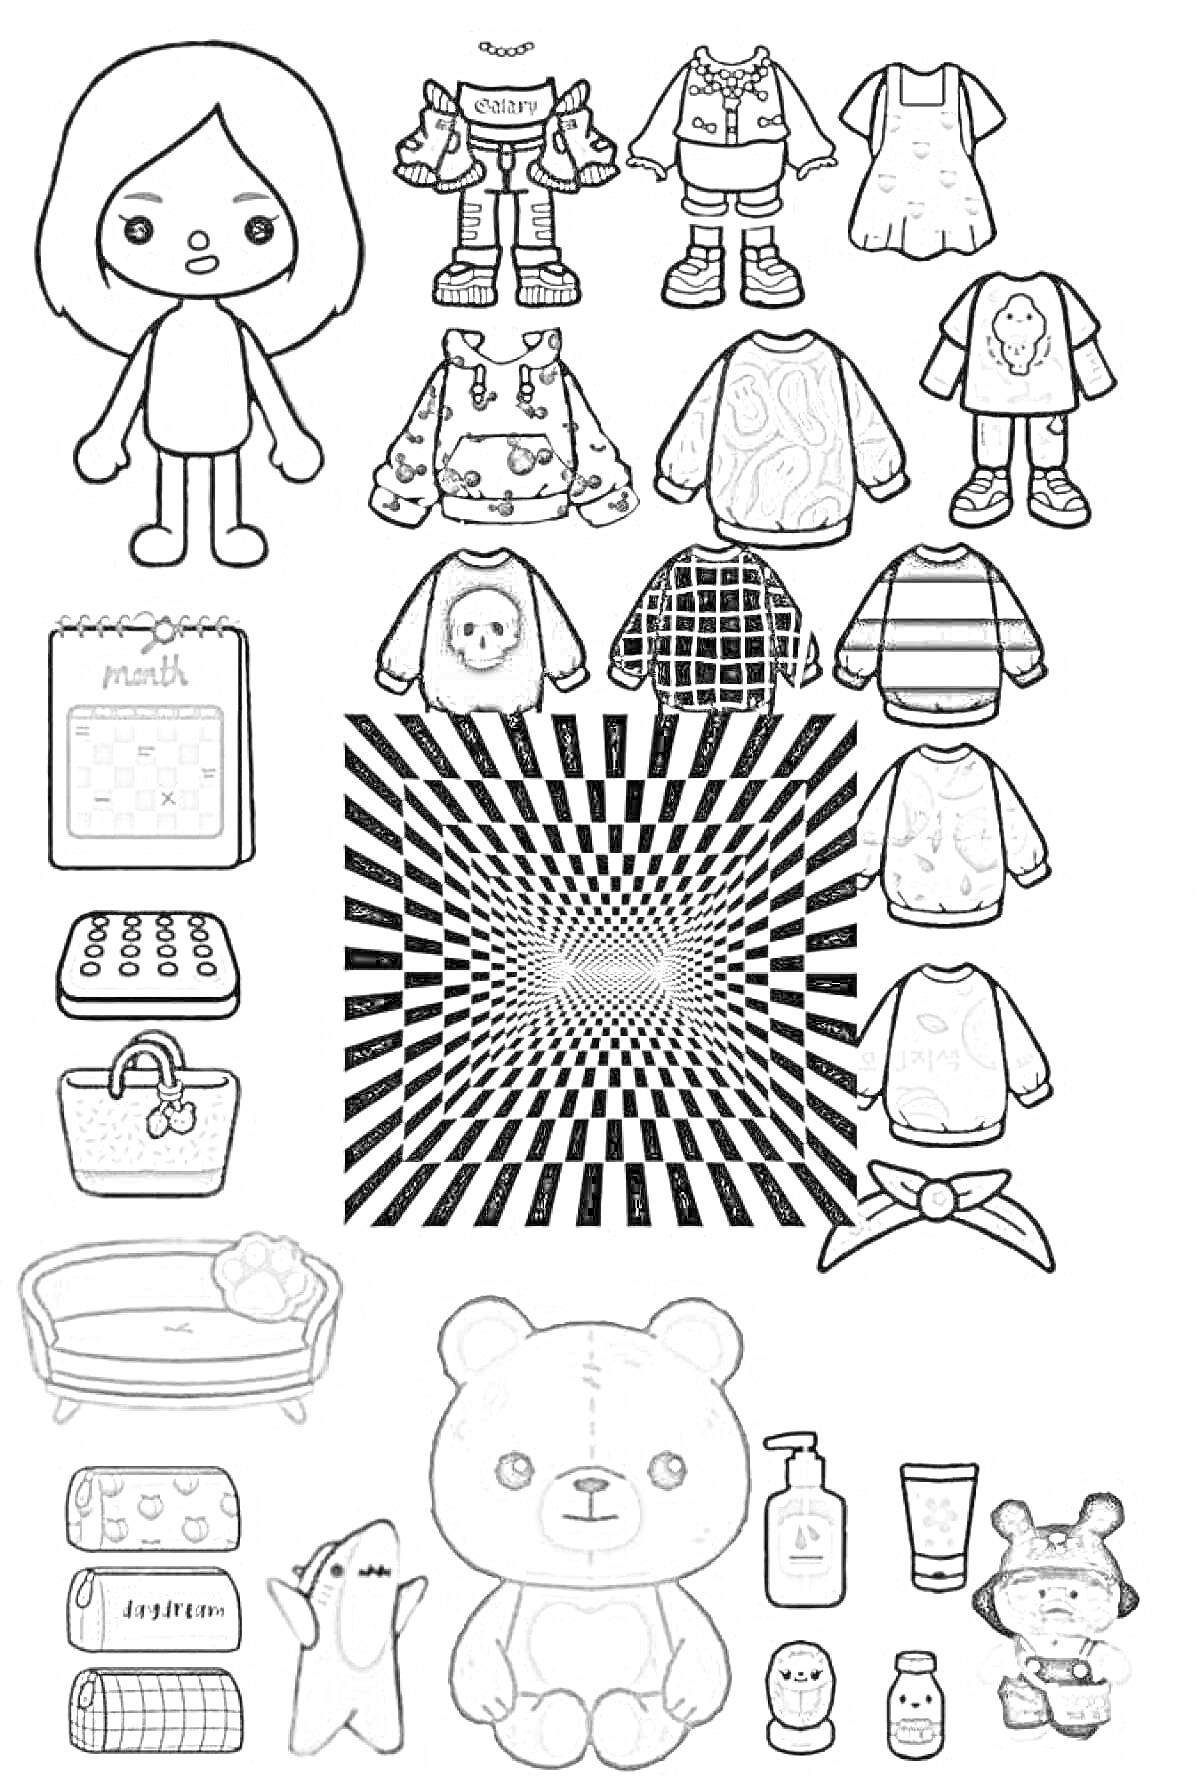 Раскраска Раскраска с изображением различных предметов и персонажей из 